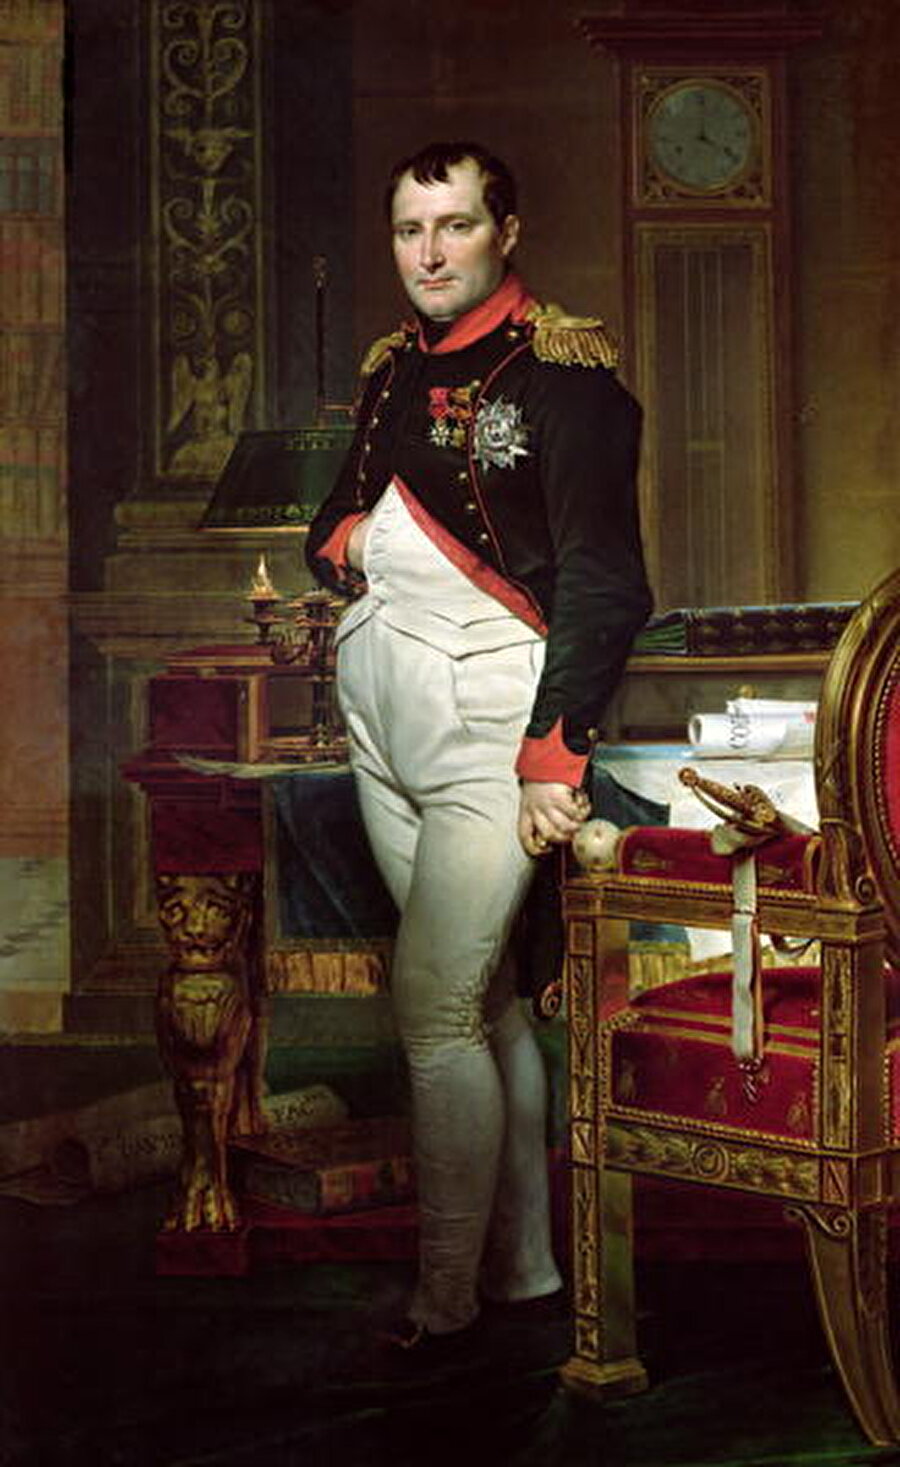 Napoleon kısa boyluydu. 
Tam aksine; 1,70'lik boyu ile dönemin Fransız erkeklerine oranla uzundur.